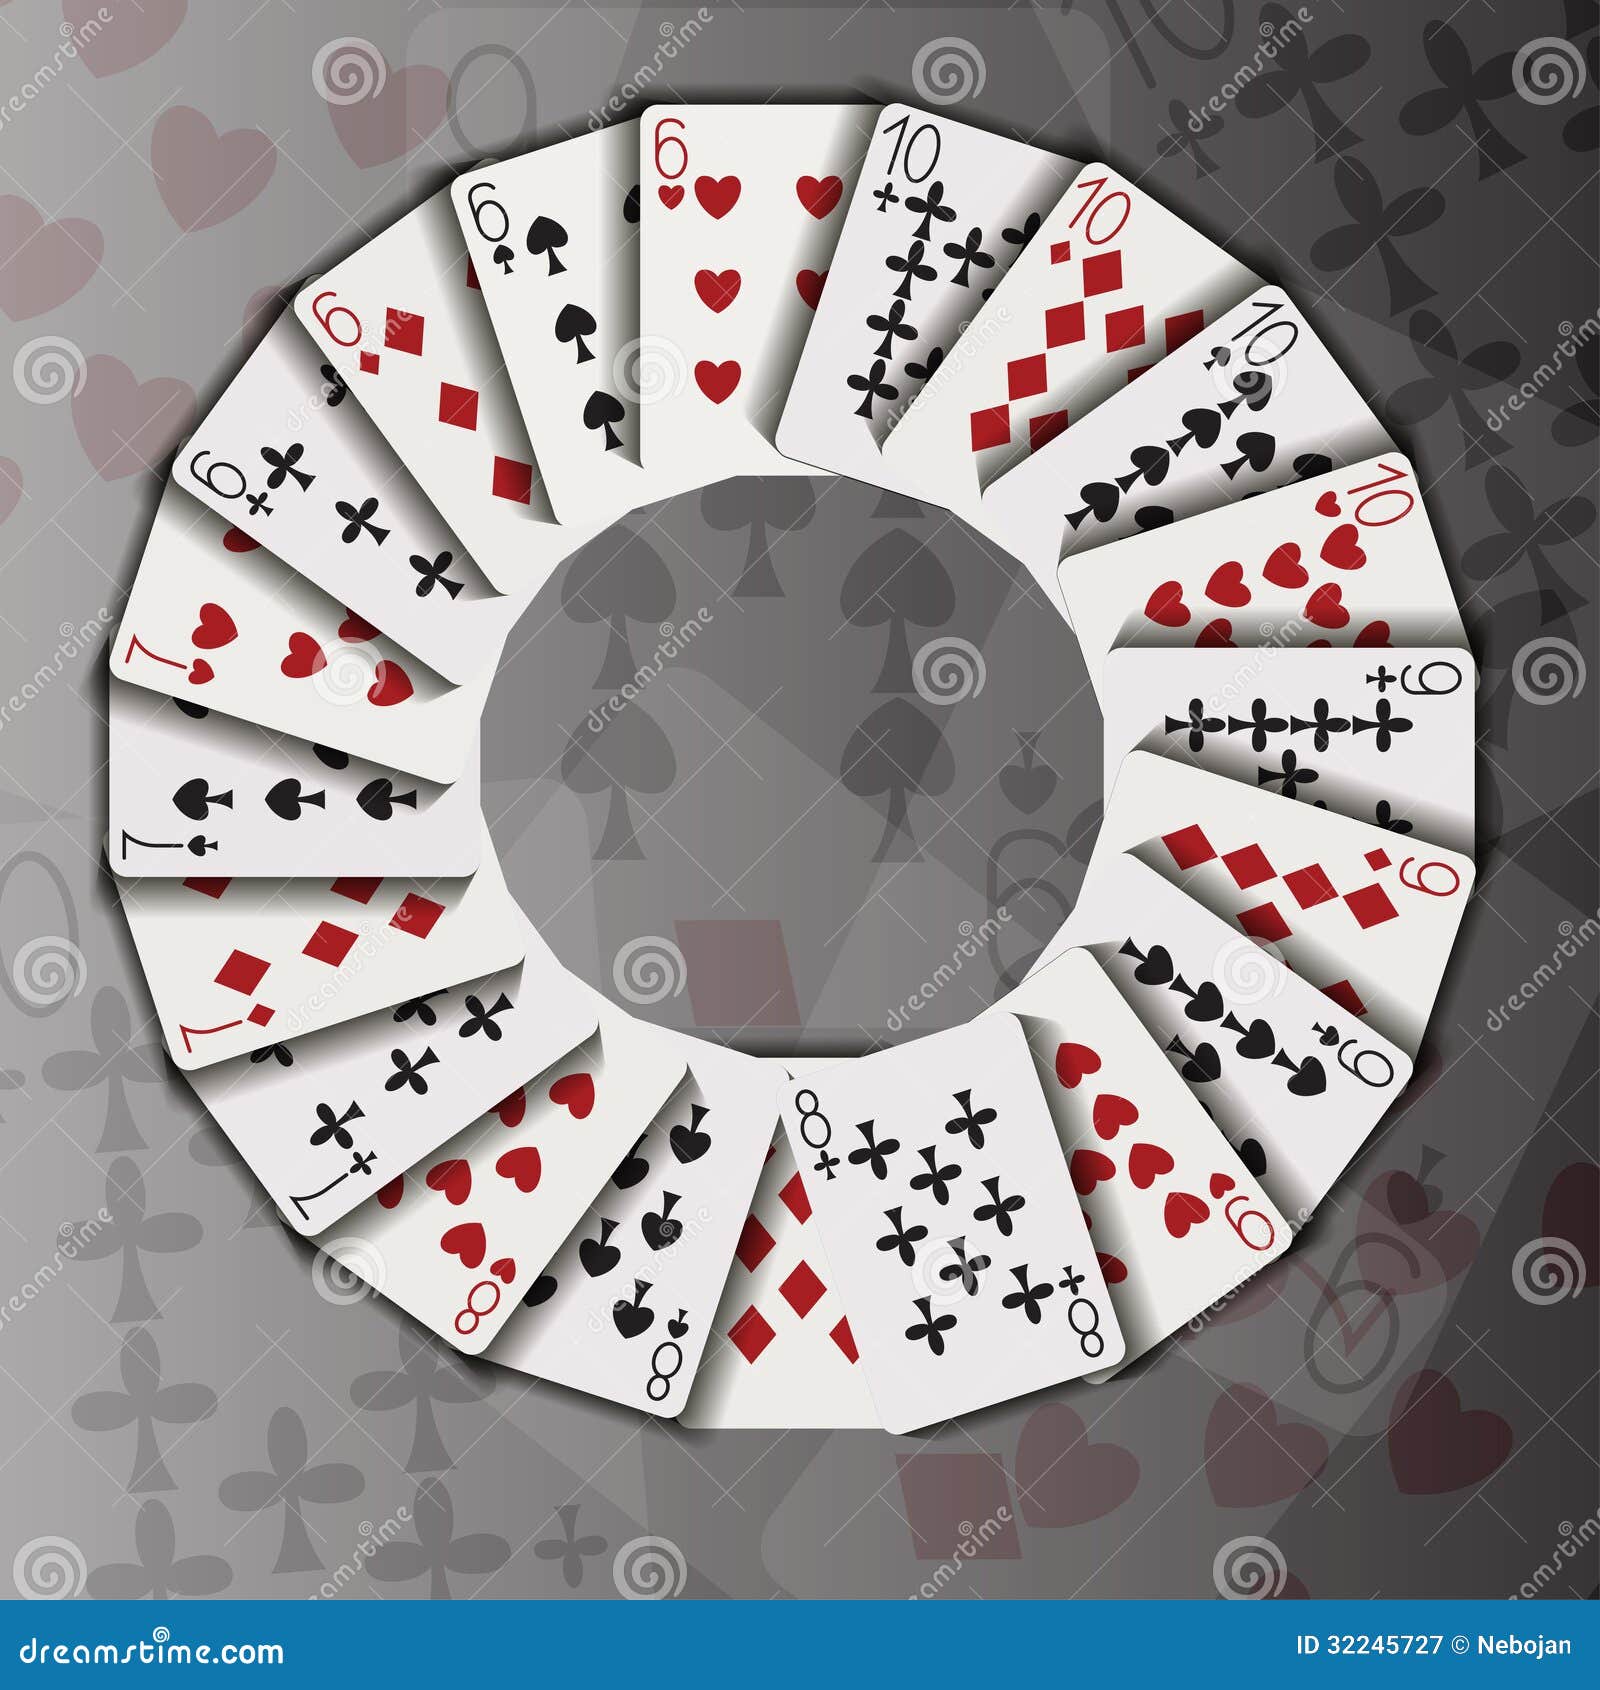 В четырех кругах разложено 7 карт. Карточный круг. Карточная игра по кругу. Игральные карты кругом. Карты разложенные по кругу.